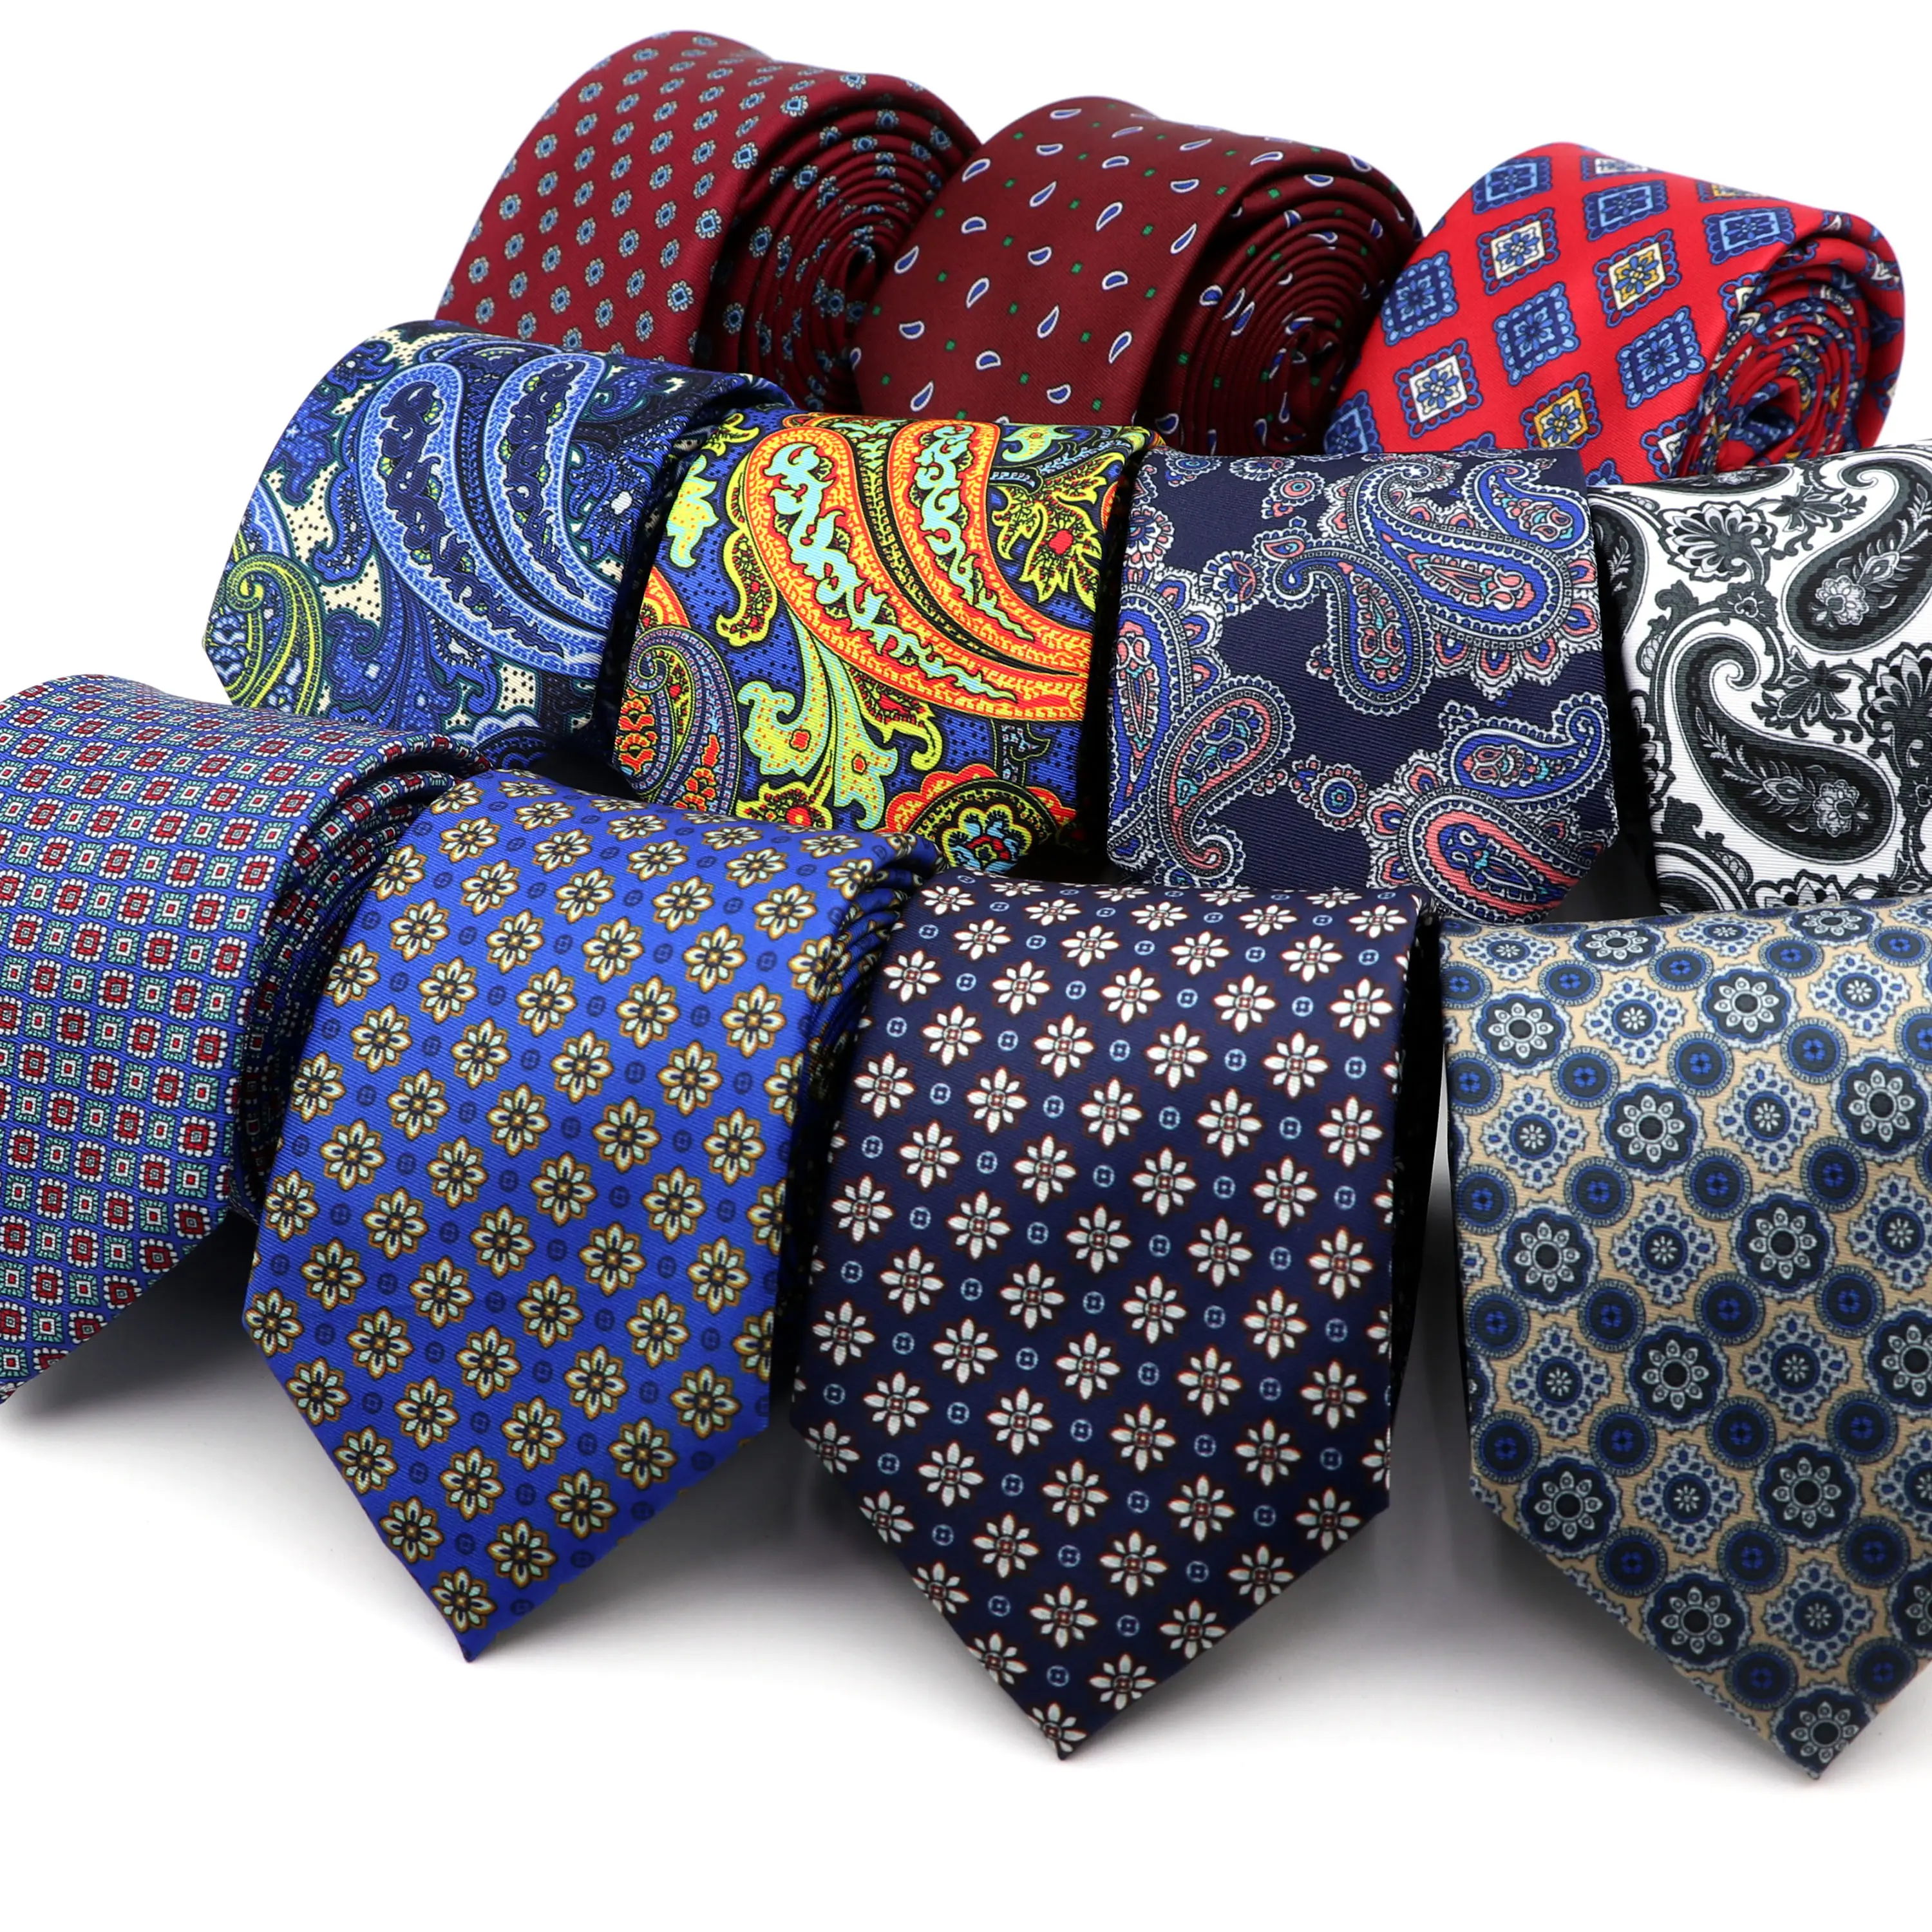 Шелковый винтажный галстук из полиэстера с принтом 7 см, роскошный цветочный галстук в клетку, в горошек, с пейсли, галстук для банкета, костюма, смокинга, подарок для мужчин на каждый день